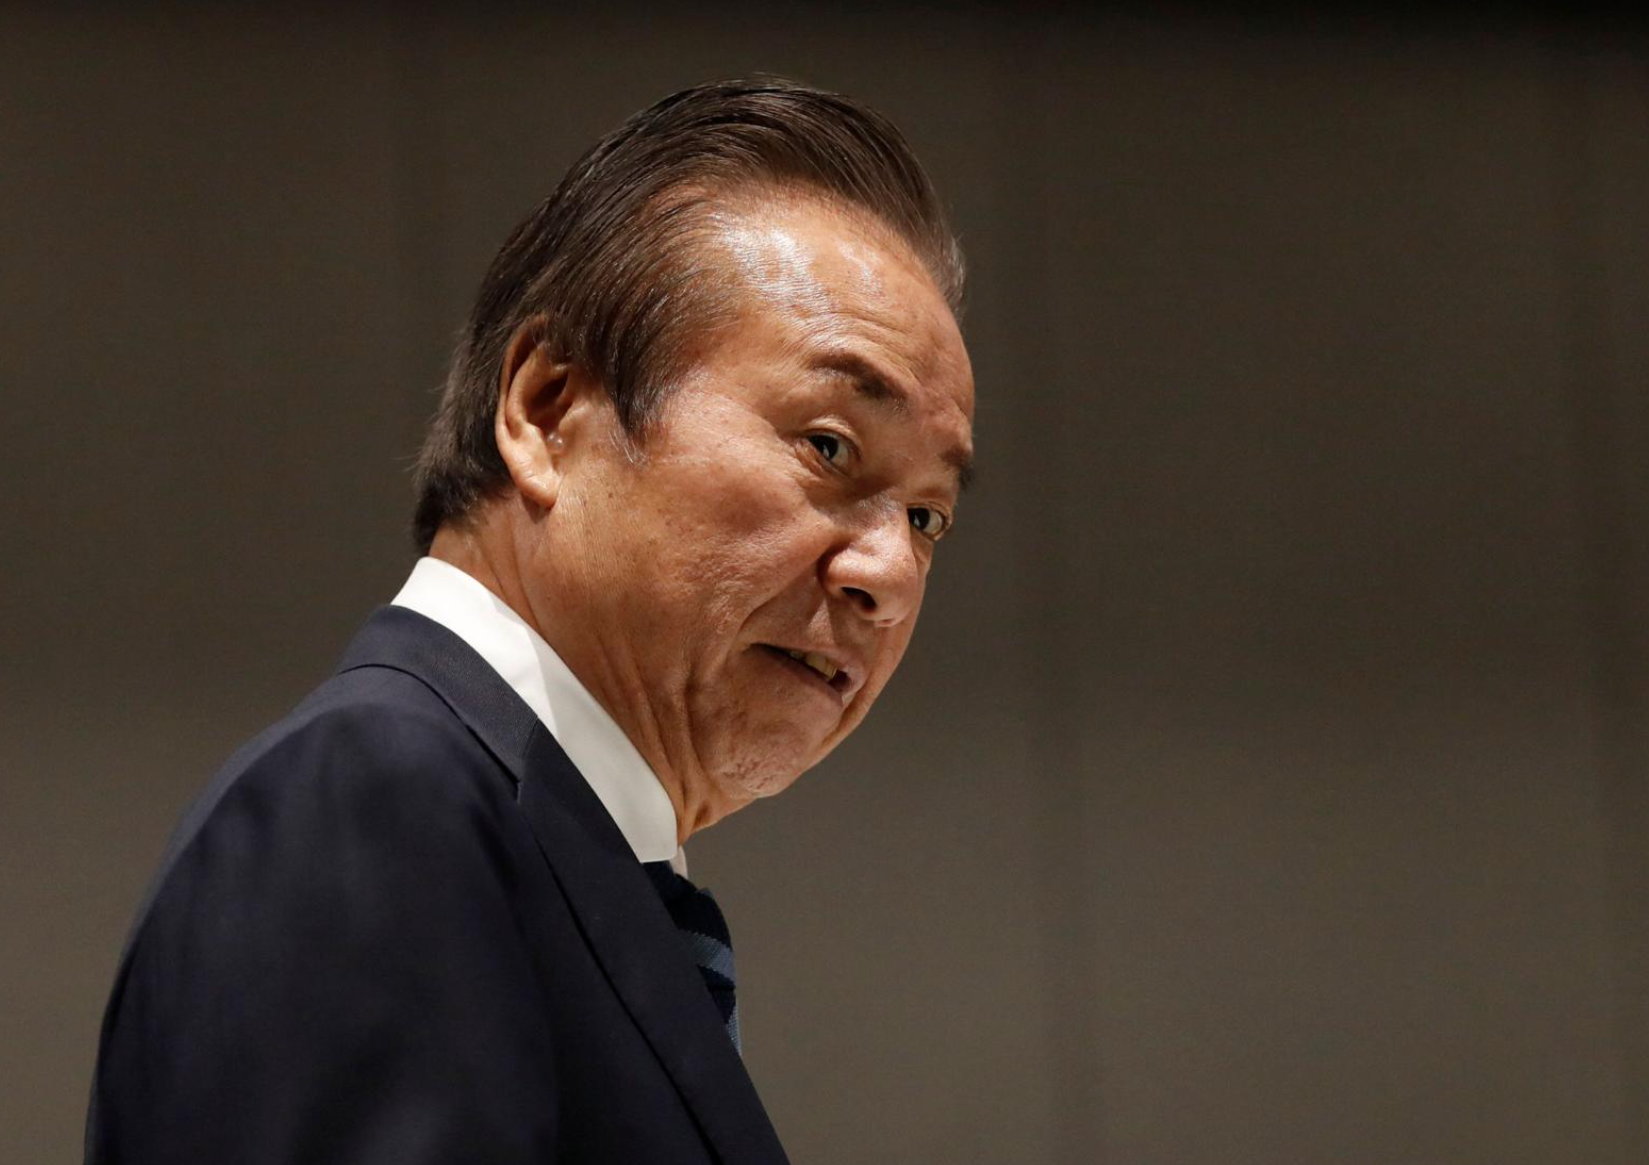 Bei Haruyuki Takahashi, Vorstandsmitglied der Olympischen Spiele in Tokio 2020, wurde eine Hausdurchsuchung durchgeführt.